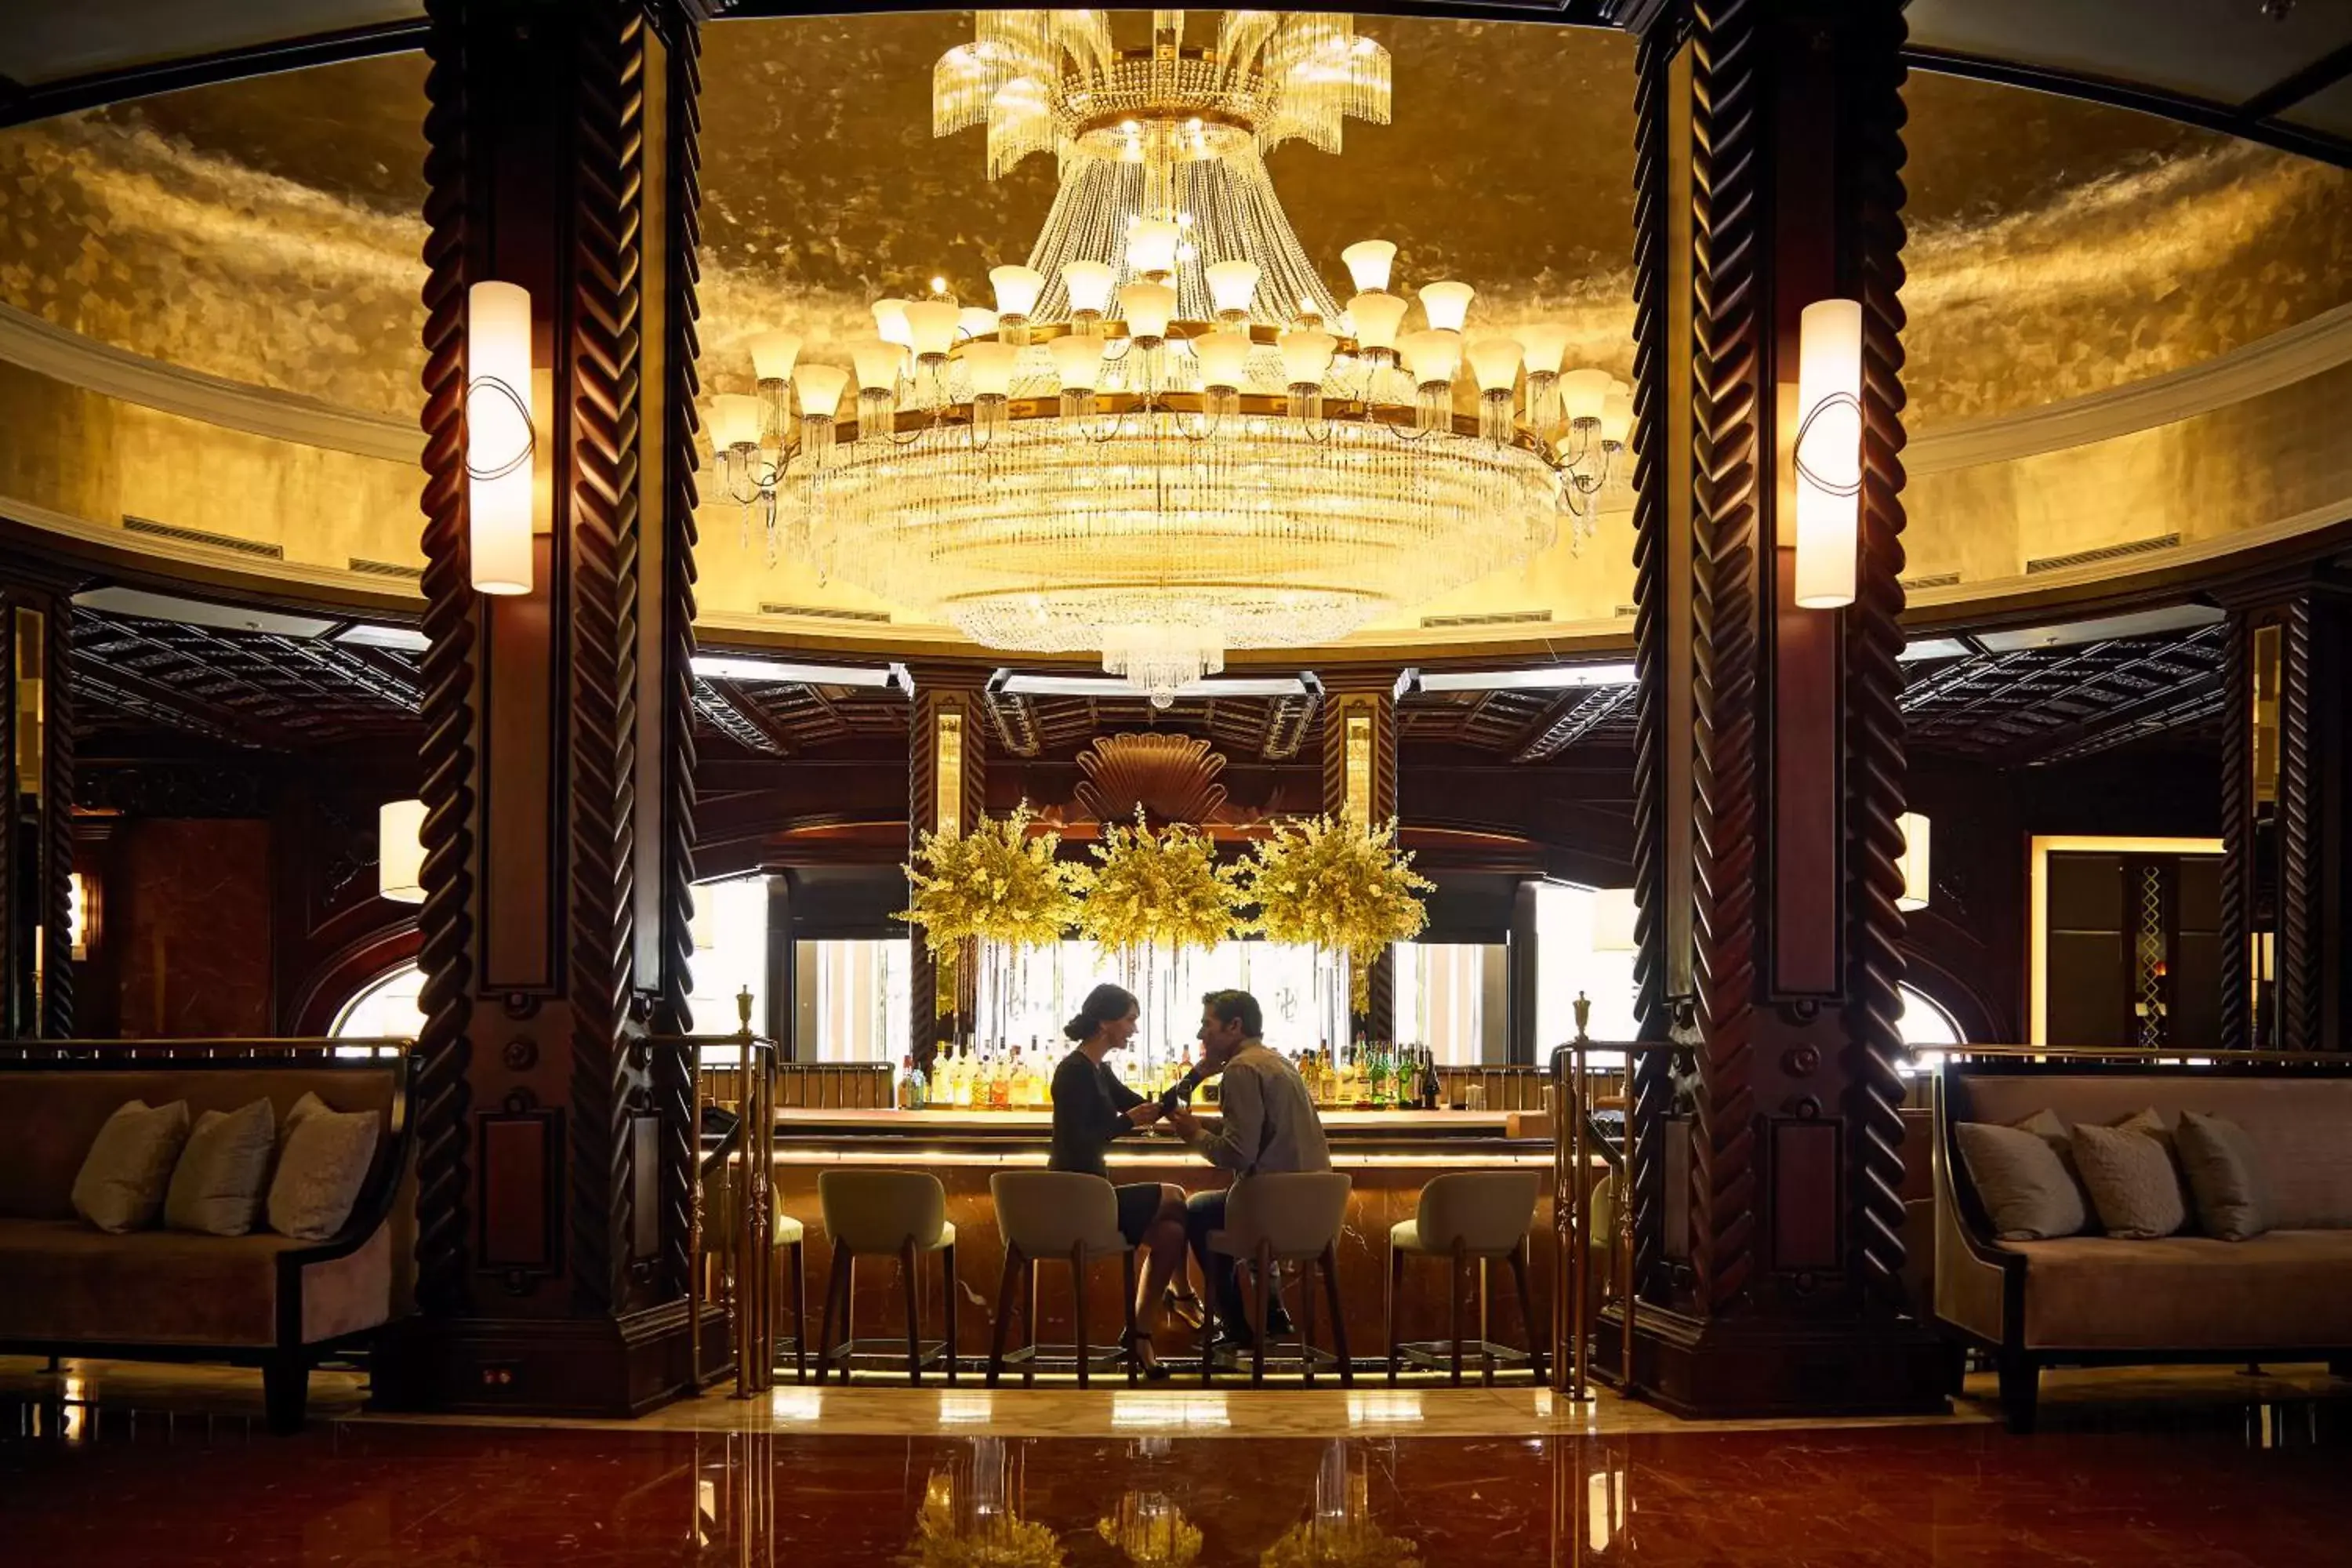 Lobby or reception in Fairmont El San Juan Hotel